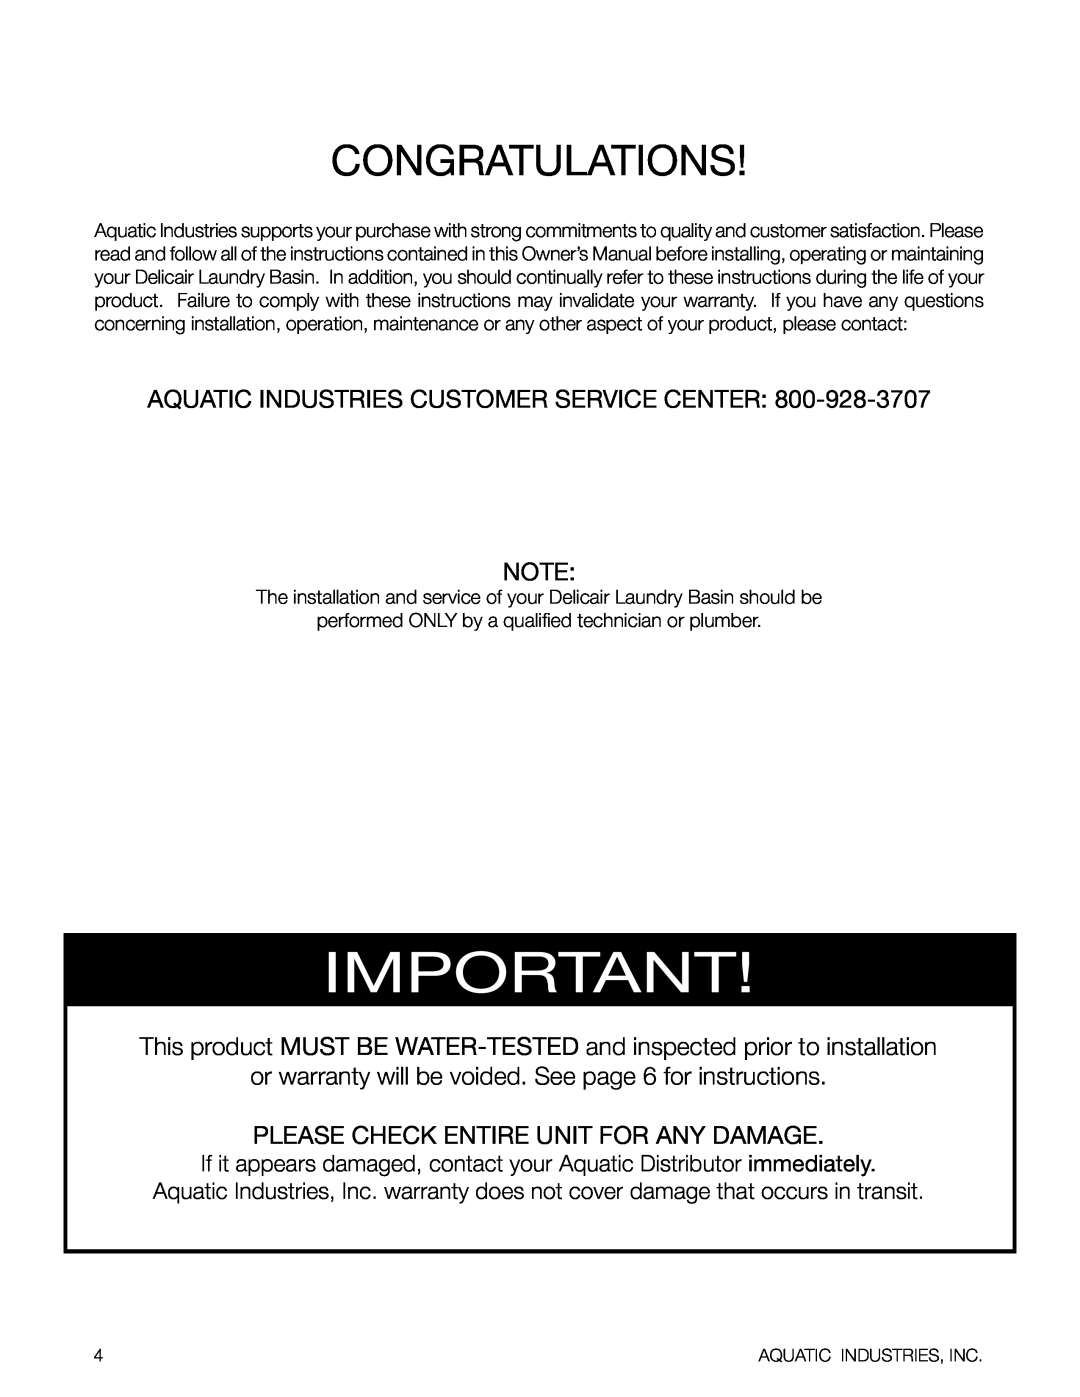 Aquatic Delicair Laundry Basin owner manual congratulations, Aquatic Industries Customer Service Center 